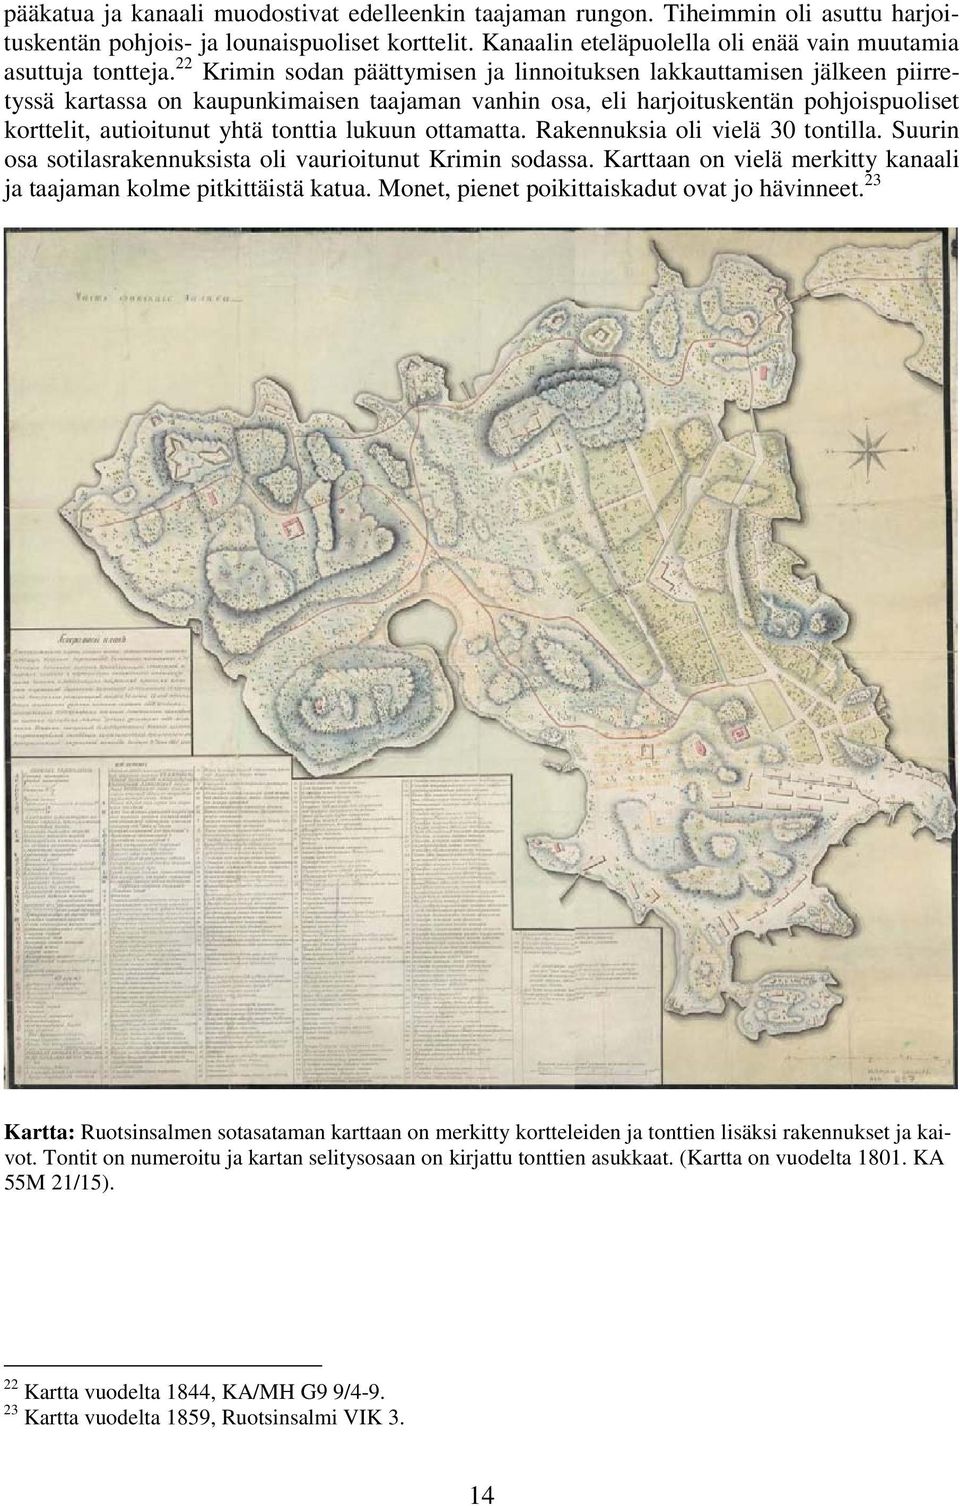 Krimin sodan päättymisen ja linnoituksen lakkauttamisen jälkeen piirretyssä kartassa on kaupunkimaisen taajaman vanhin osa, eli harjoituskentän pohjoispuoliset korttelit, autioitunut yhtä tonttia